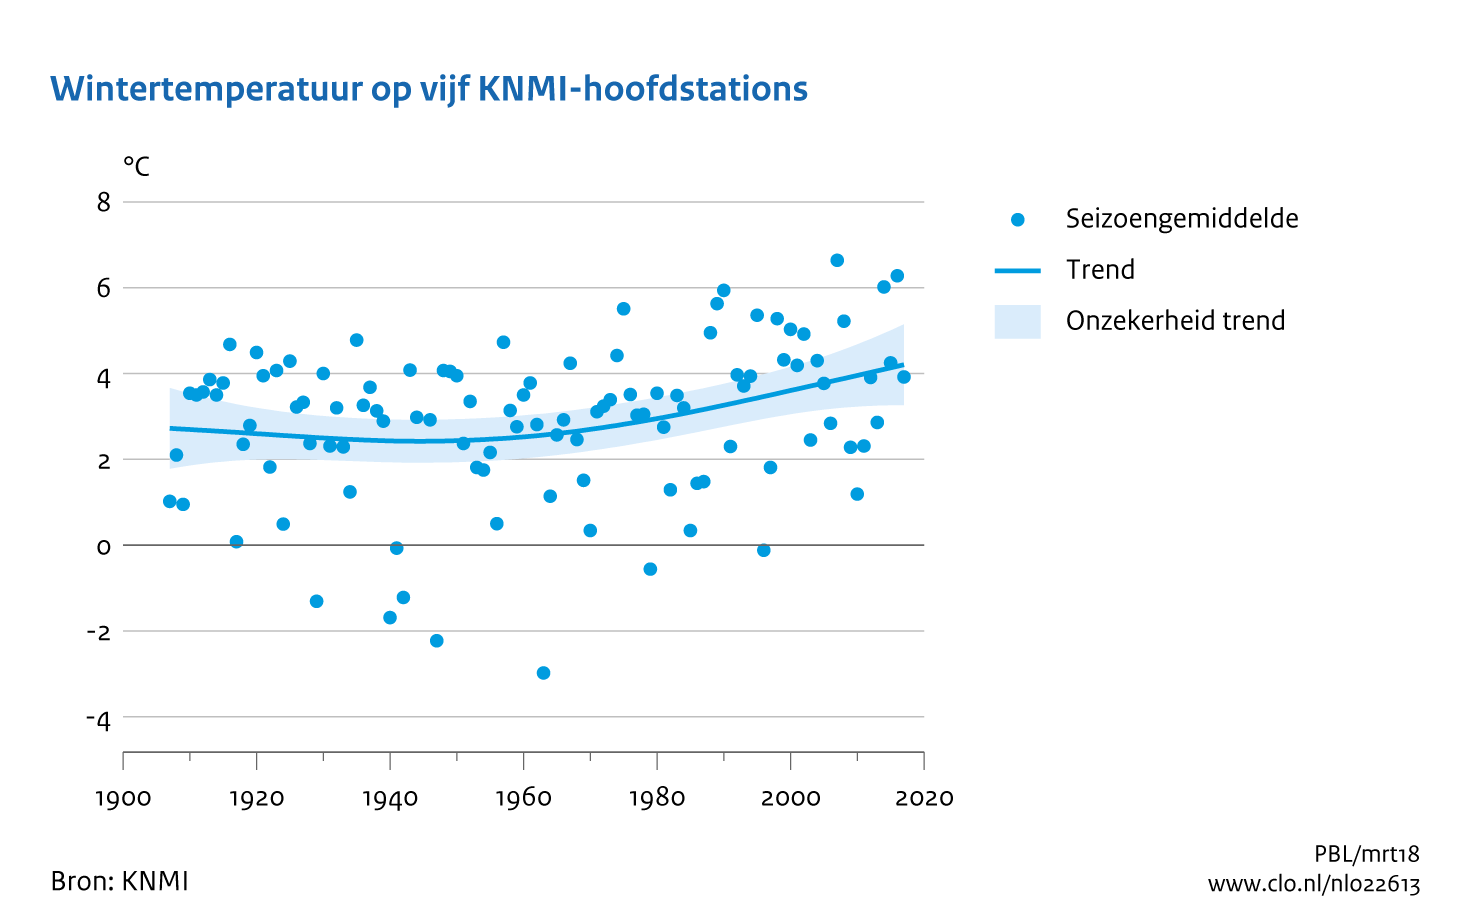 Figuur wintertemperatuur op 5 KNMI -hoofdstations  Nederland. In de rest van de tekst wordt deze figuur uitgebreider uitgelegd.